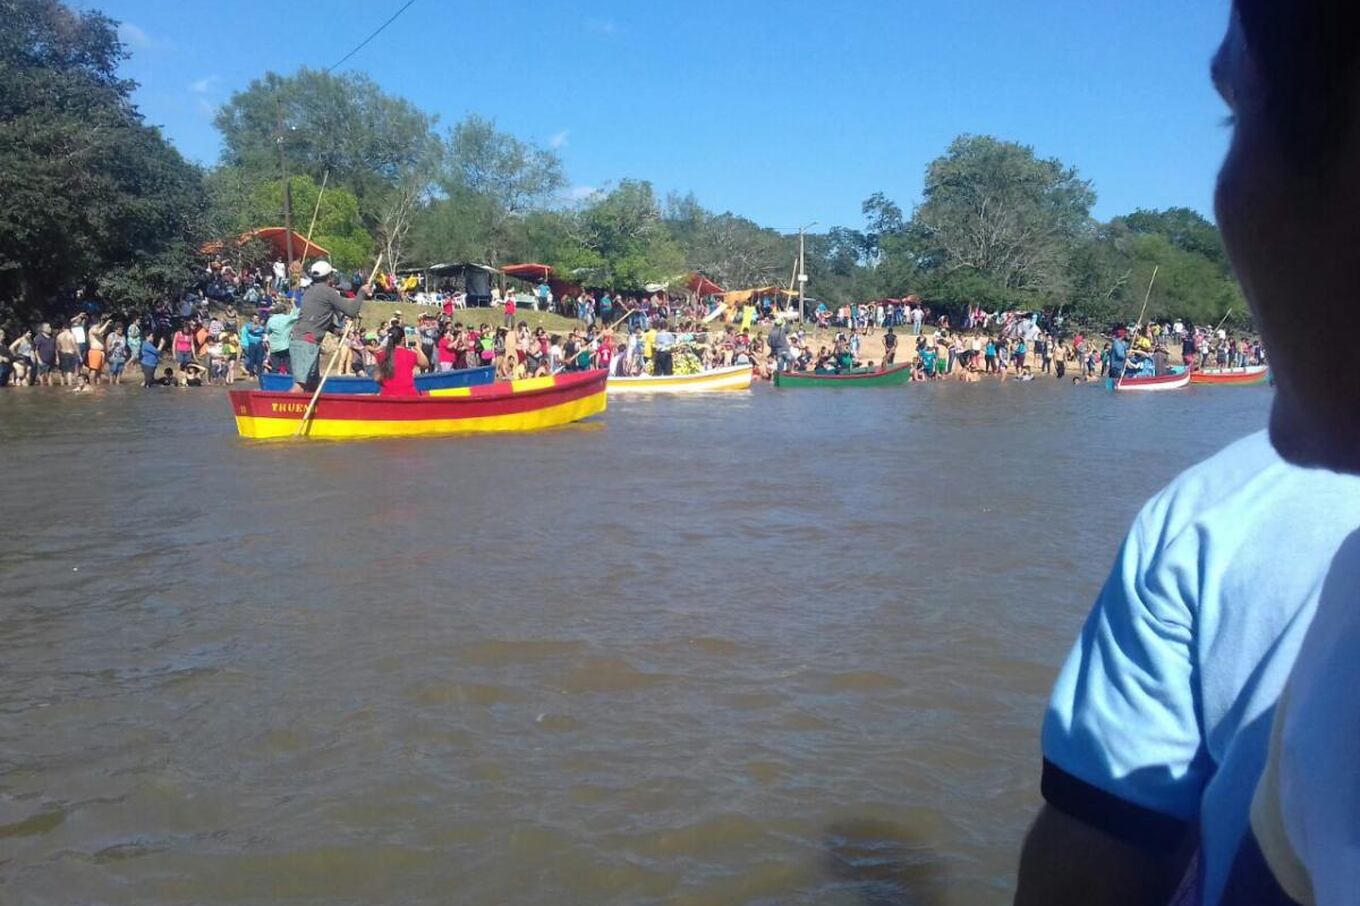 La procesión náutica fue seguida por cientos de fieles en canoas. Fotos: Nino Silguero.